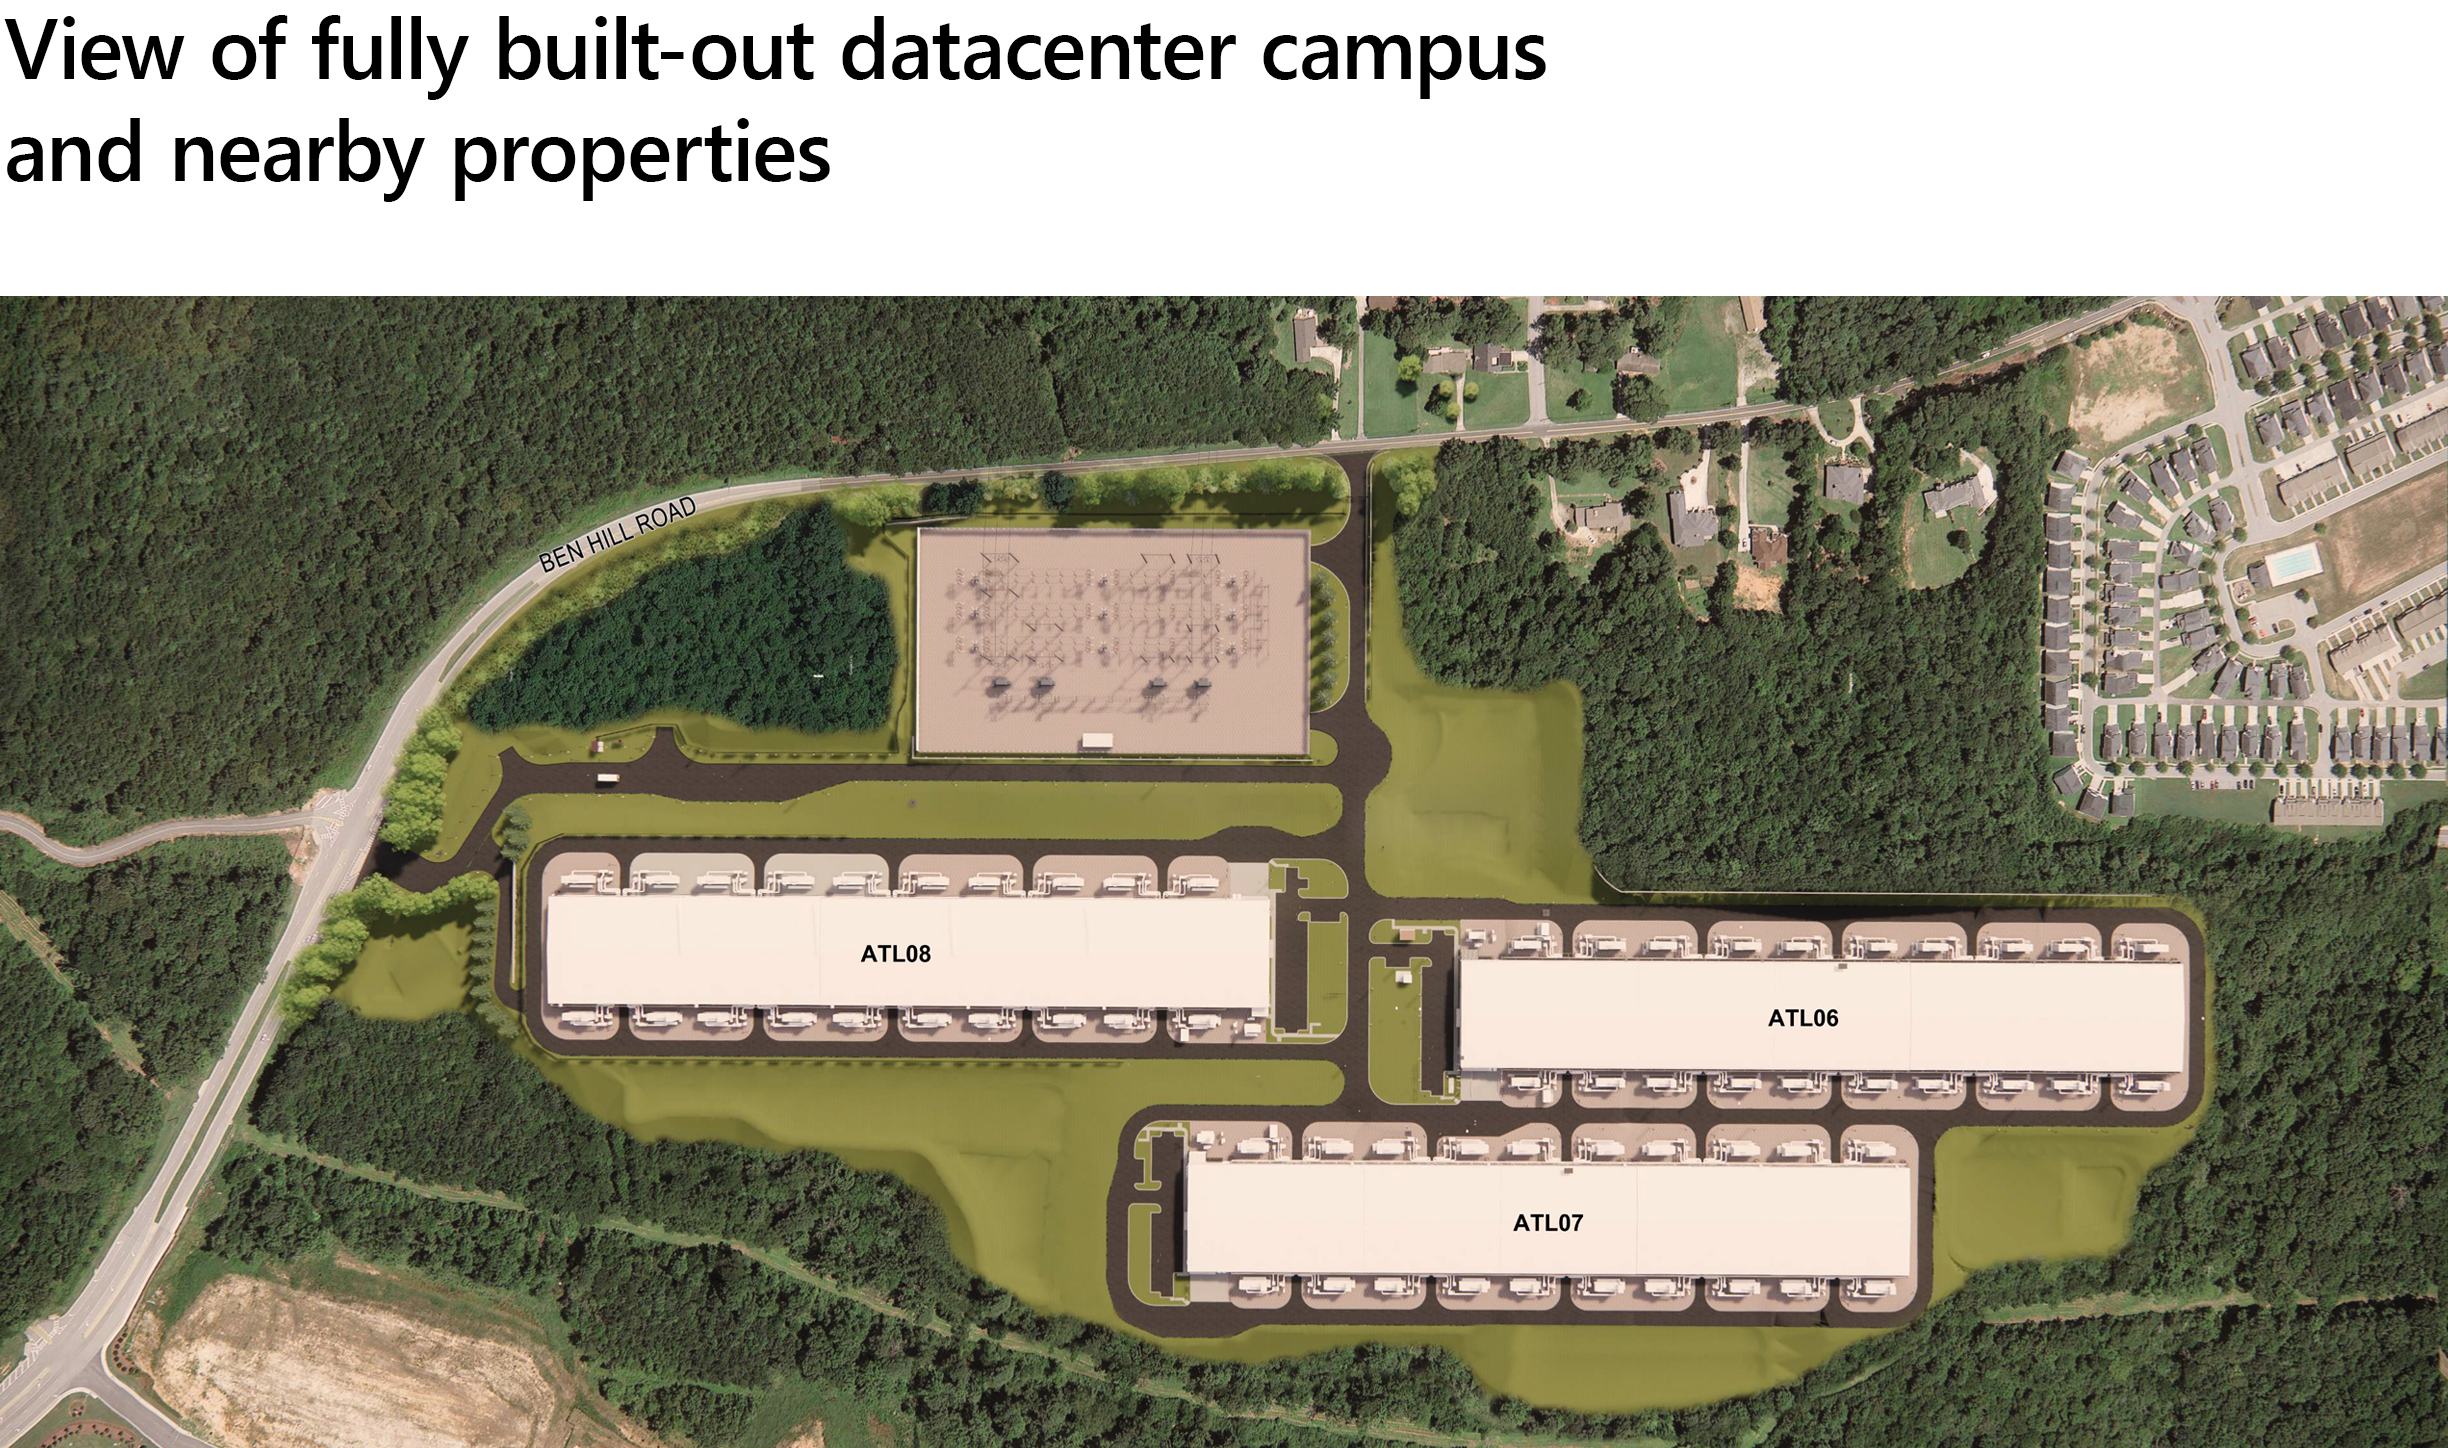 Vue du campus du centre de données entièrement intégré et des propriétés à proximité